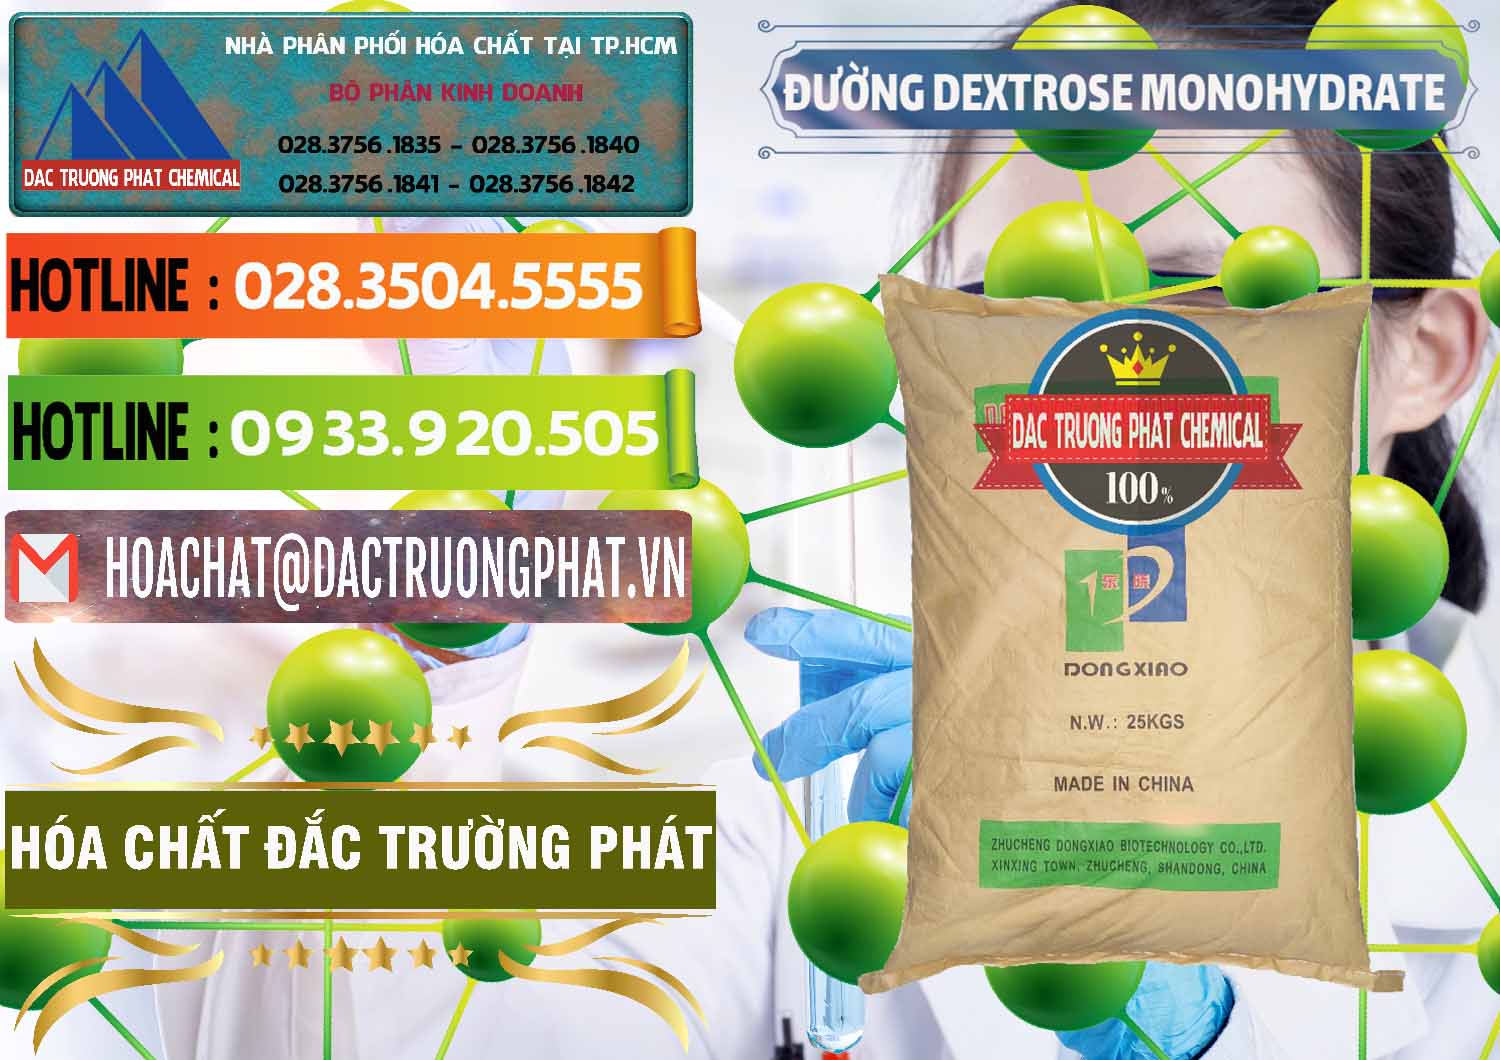 Cung ứng - bán Đường Dextrose Monohydrate Food Grade Dongxiao Trung Quốc China - 0063 - Cty kinh doanh và phân phối hóa chất tại TP.HCM - cungcaphoachat.com.vn